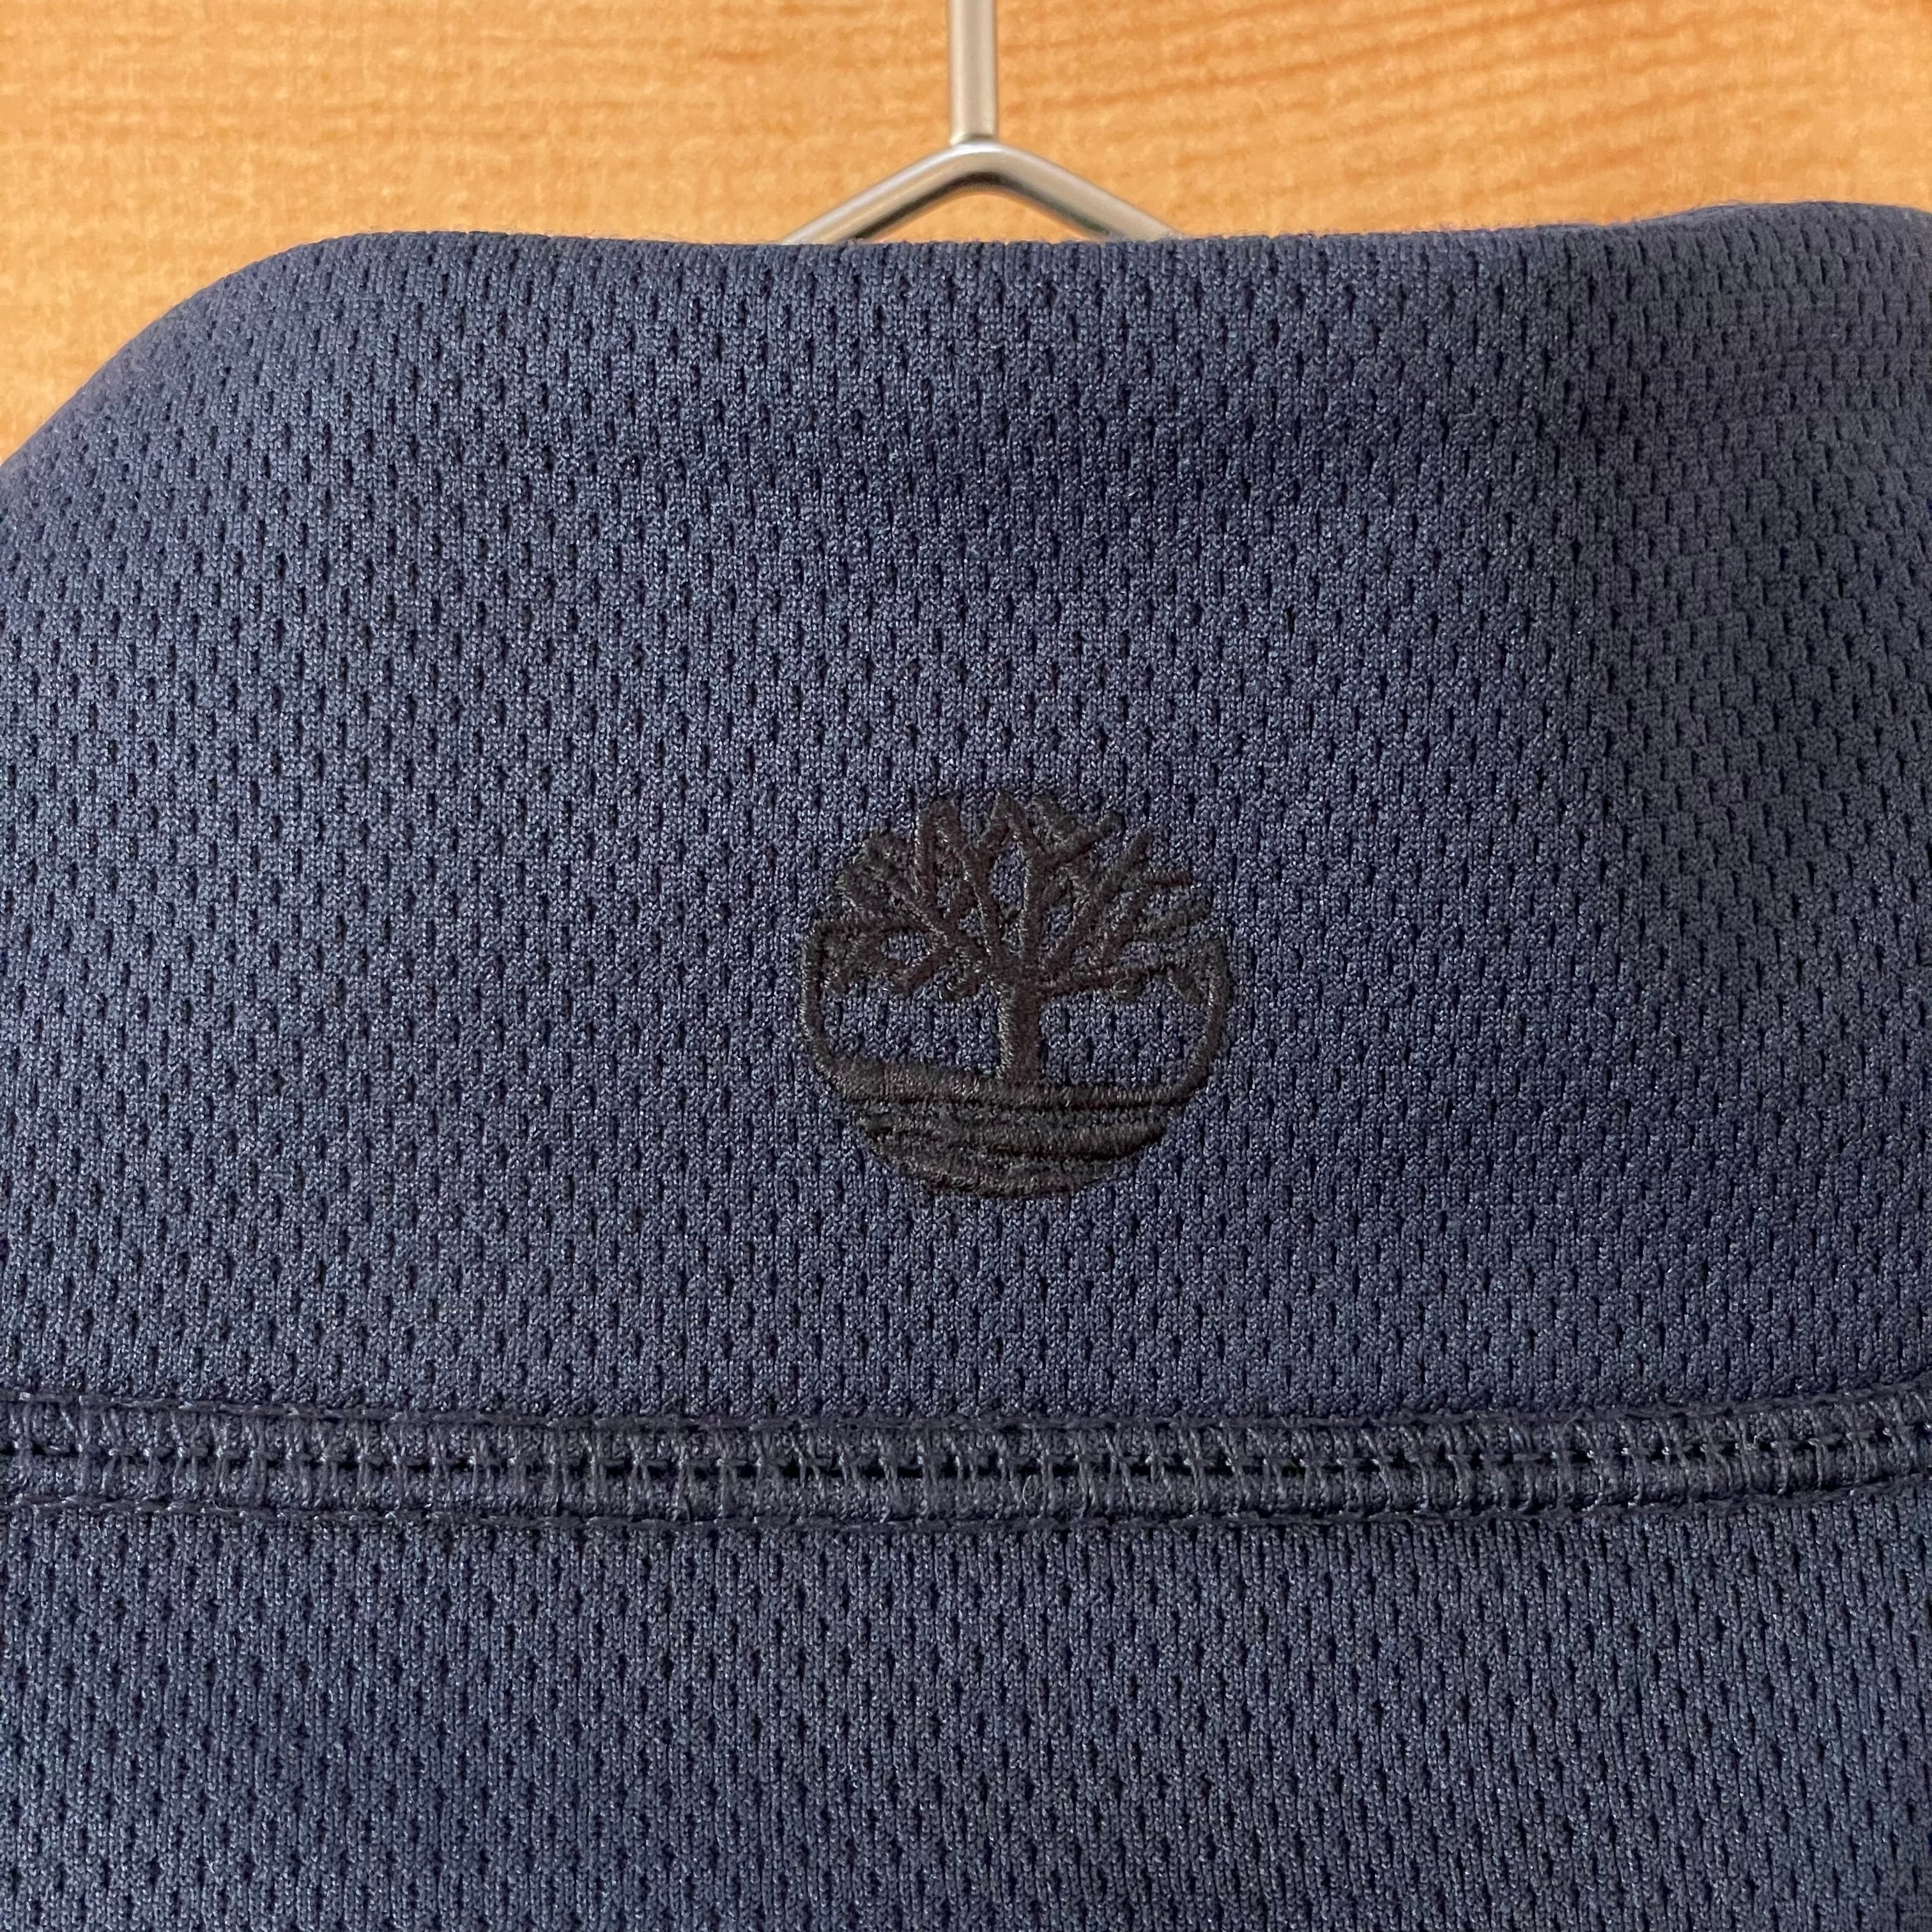 Timberland】ハーフジップ ワンポイントロゴ 刺繍 スウェット プル